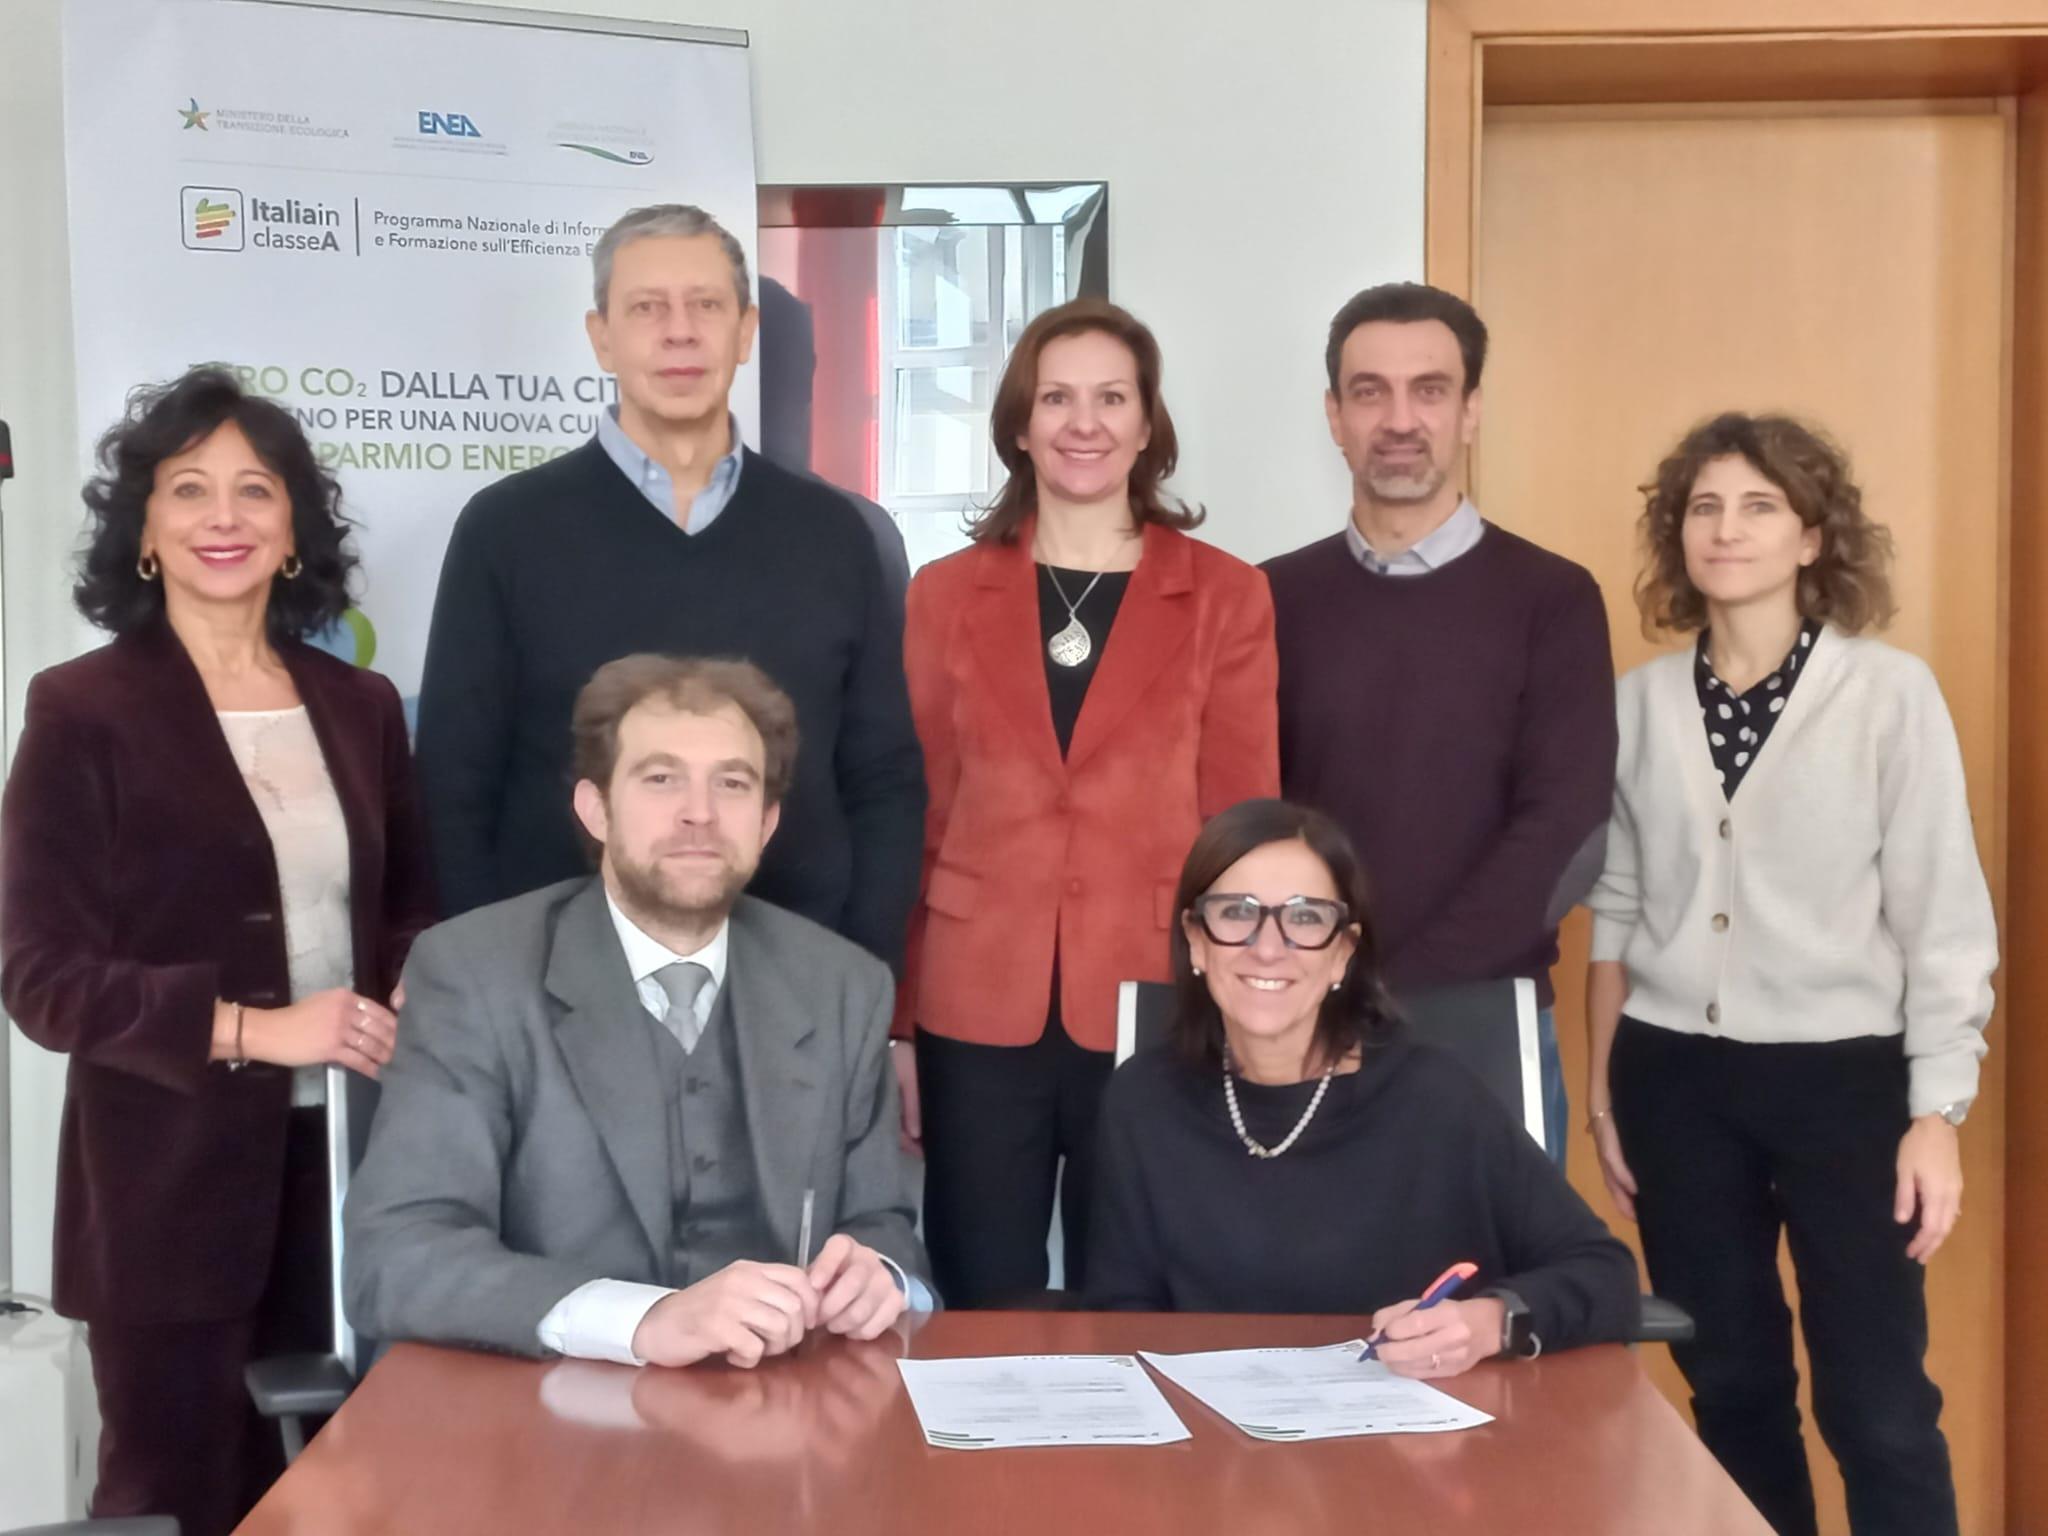 Foto di gruppo del personale ENEA e della Direzione Ambiente, energia e territorio di Regione Piemonte scattata a seguito dell'accordo Opinion leader